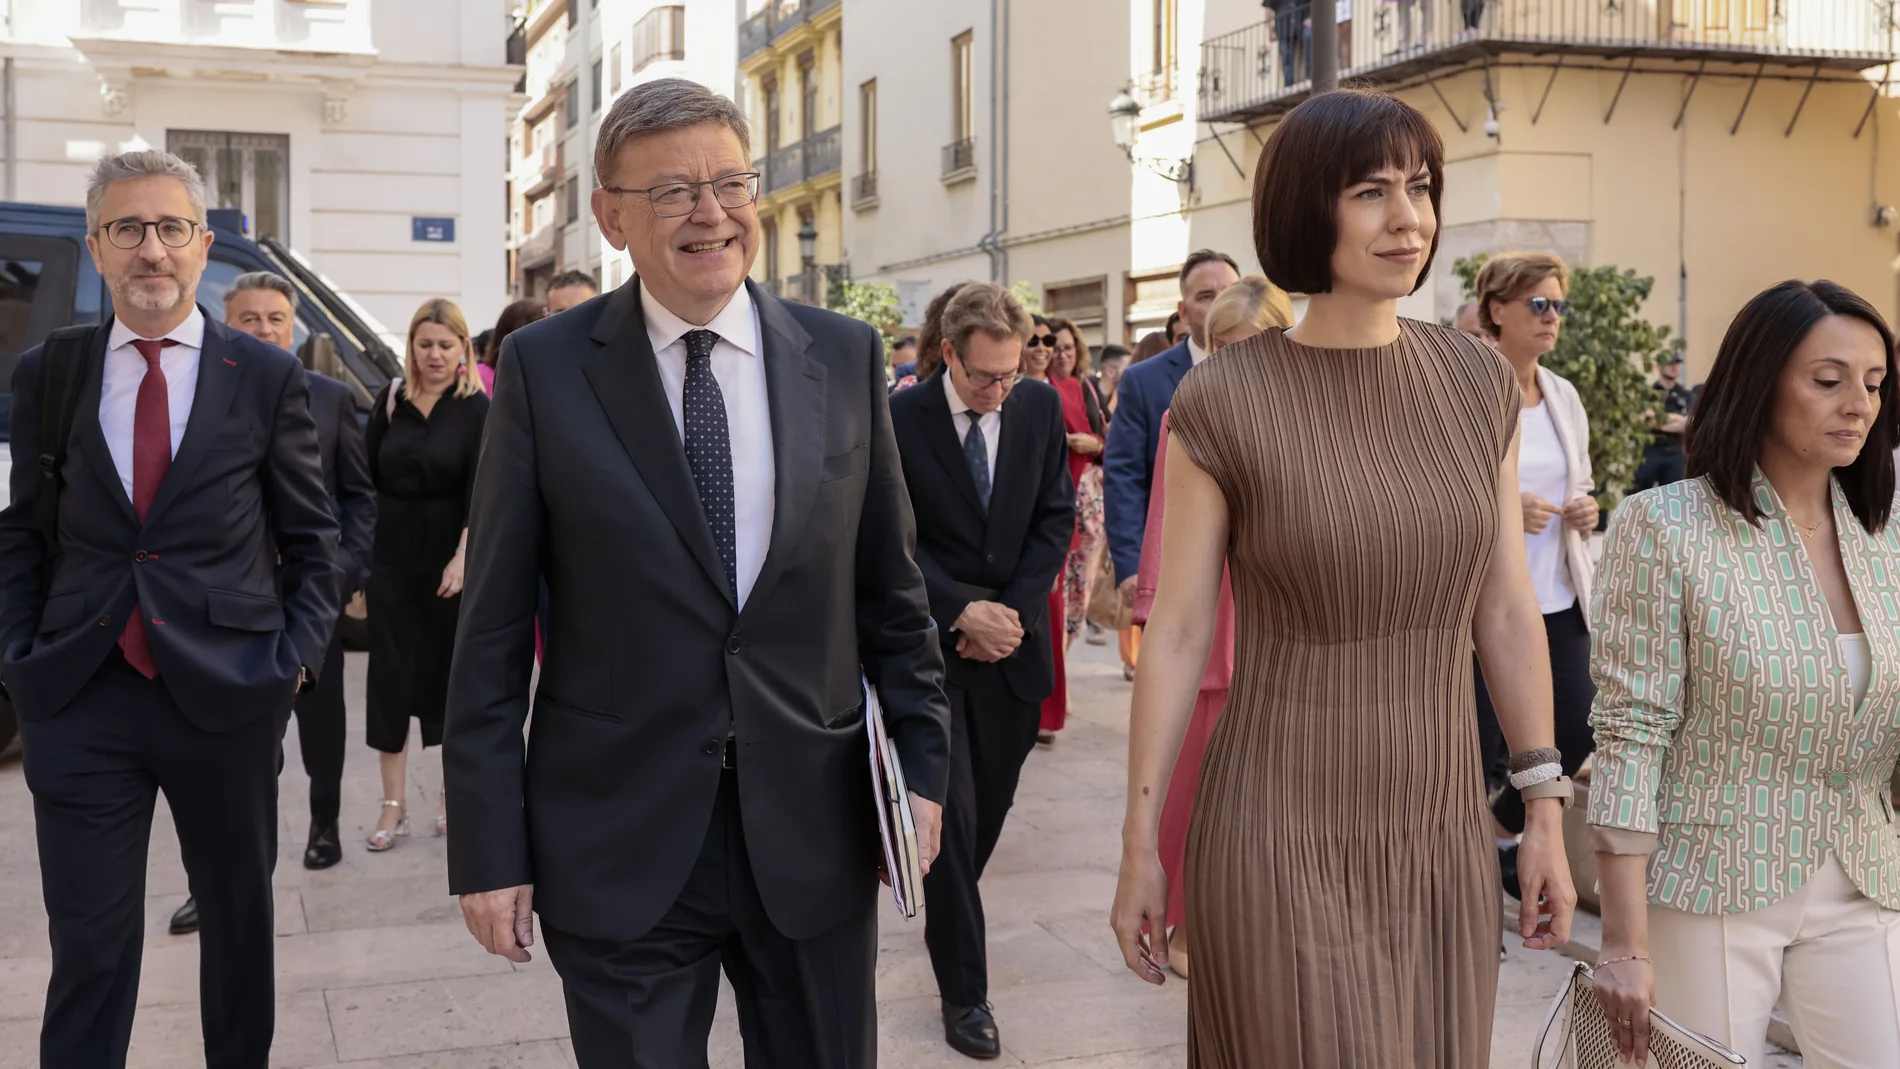 El presidente Puig a su llegada a Les Corts acompañado por la ministra Diana Morant y el conseller Españ